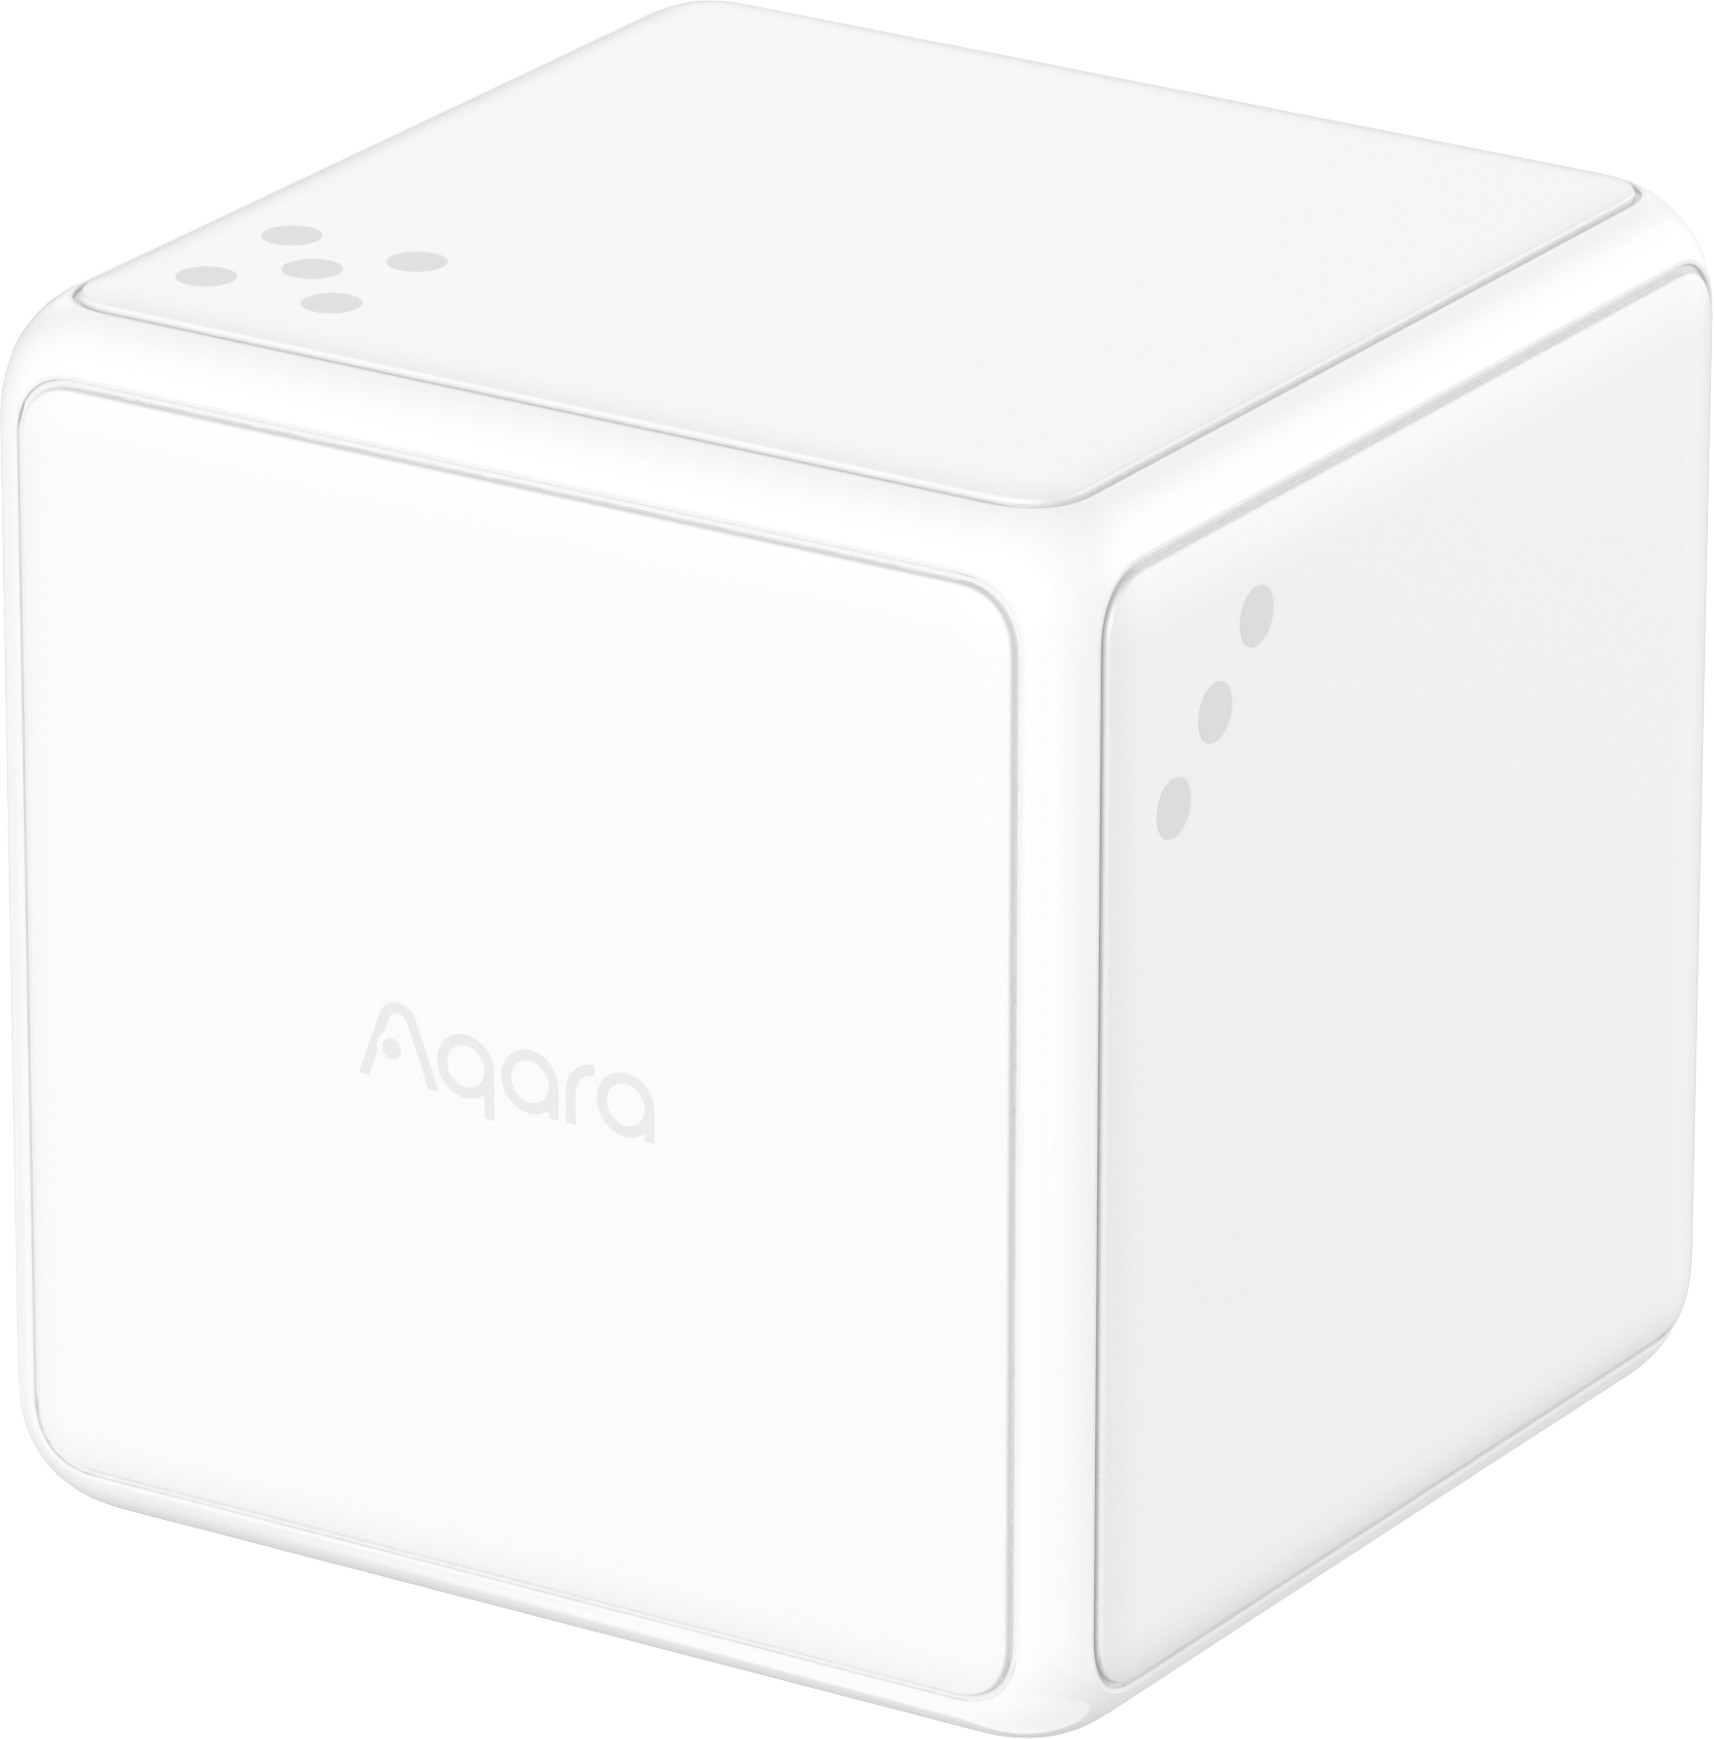 Aqara smart home controller Cube T1 Pro 6970504217614